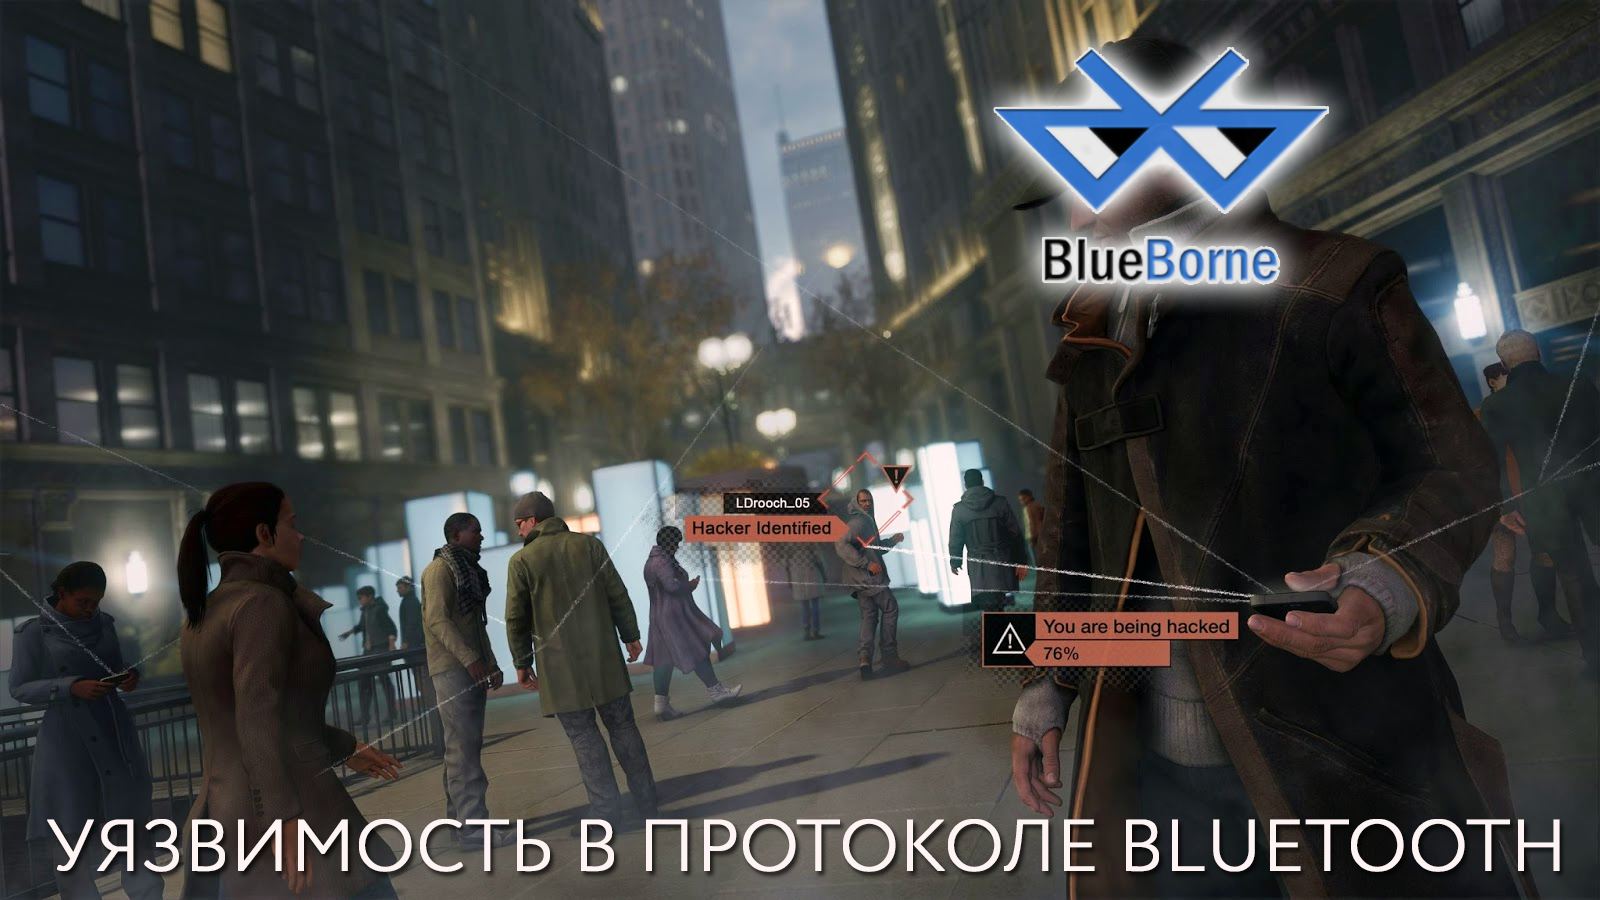 Эксплойт BlueBorne на Android, iOS, Linux и Windows: более 8 миллиардов устройств критически уязвимы - 1